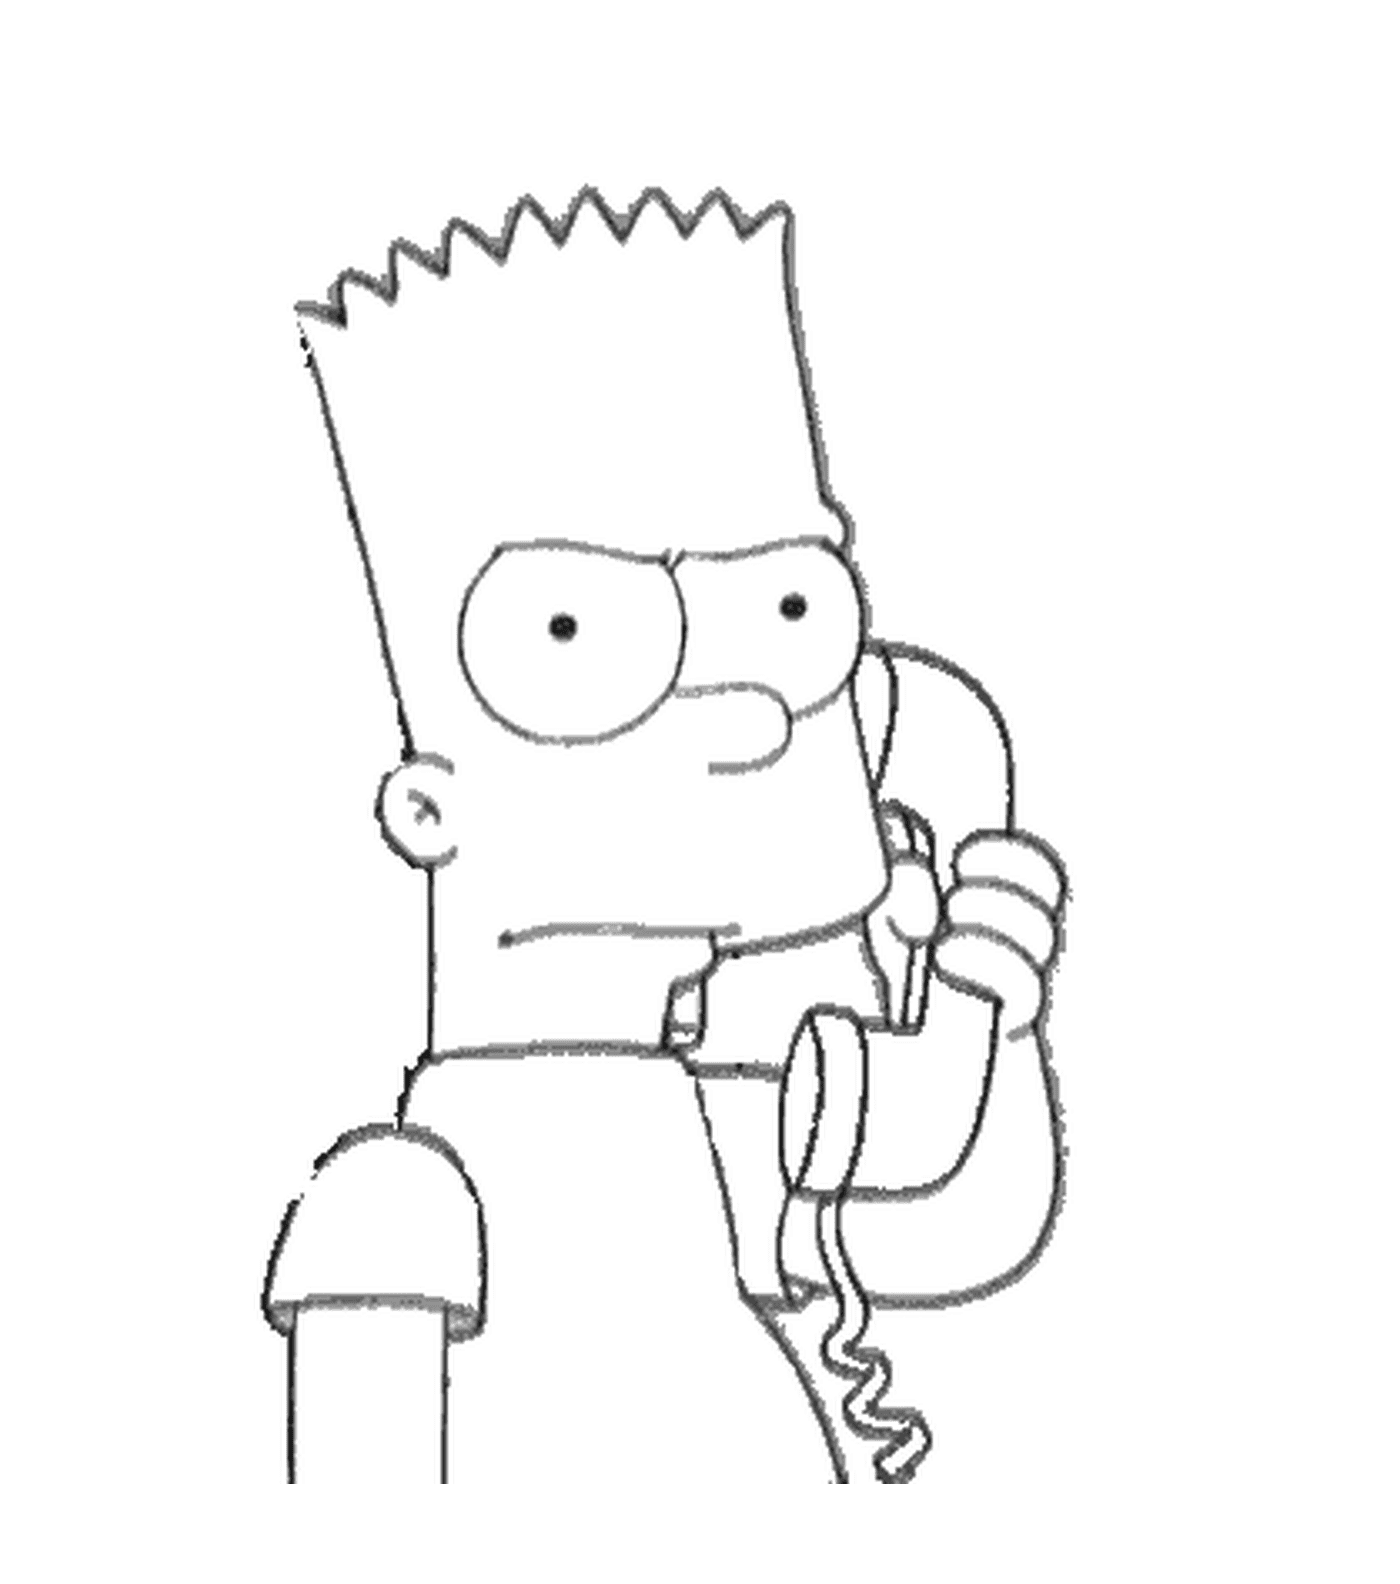  O Bart está a falar a sério ao telefone 